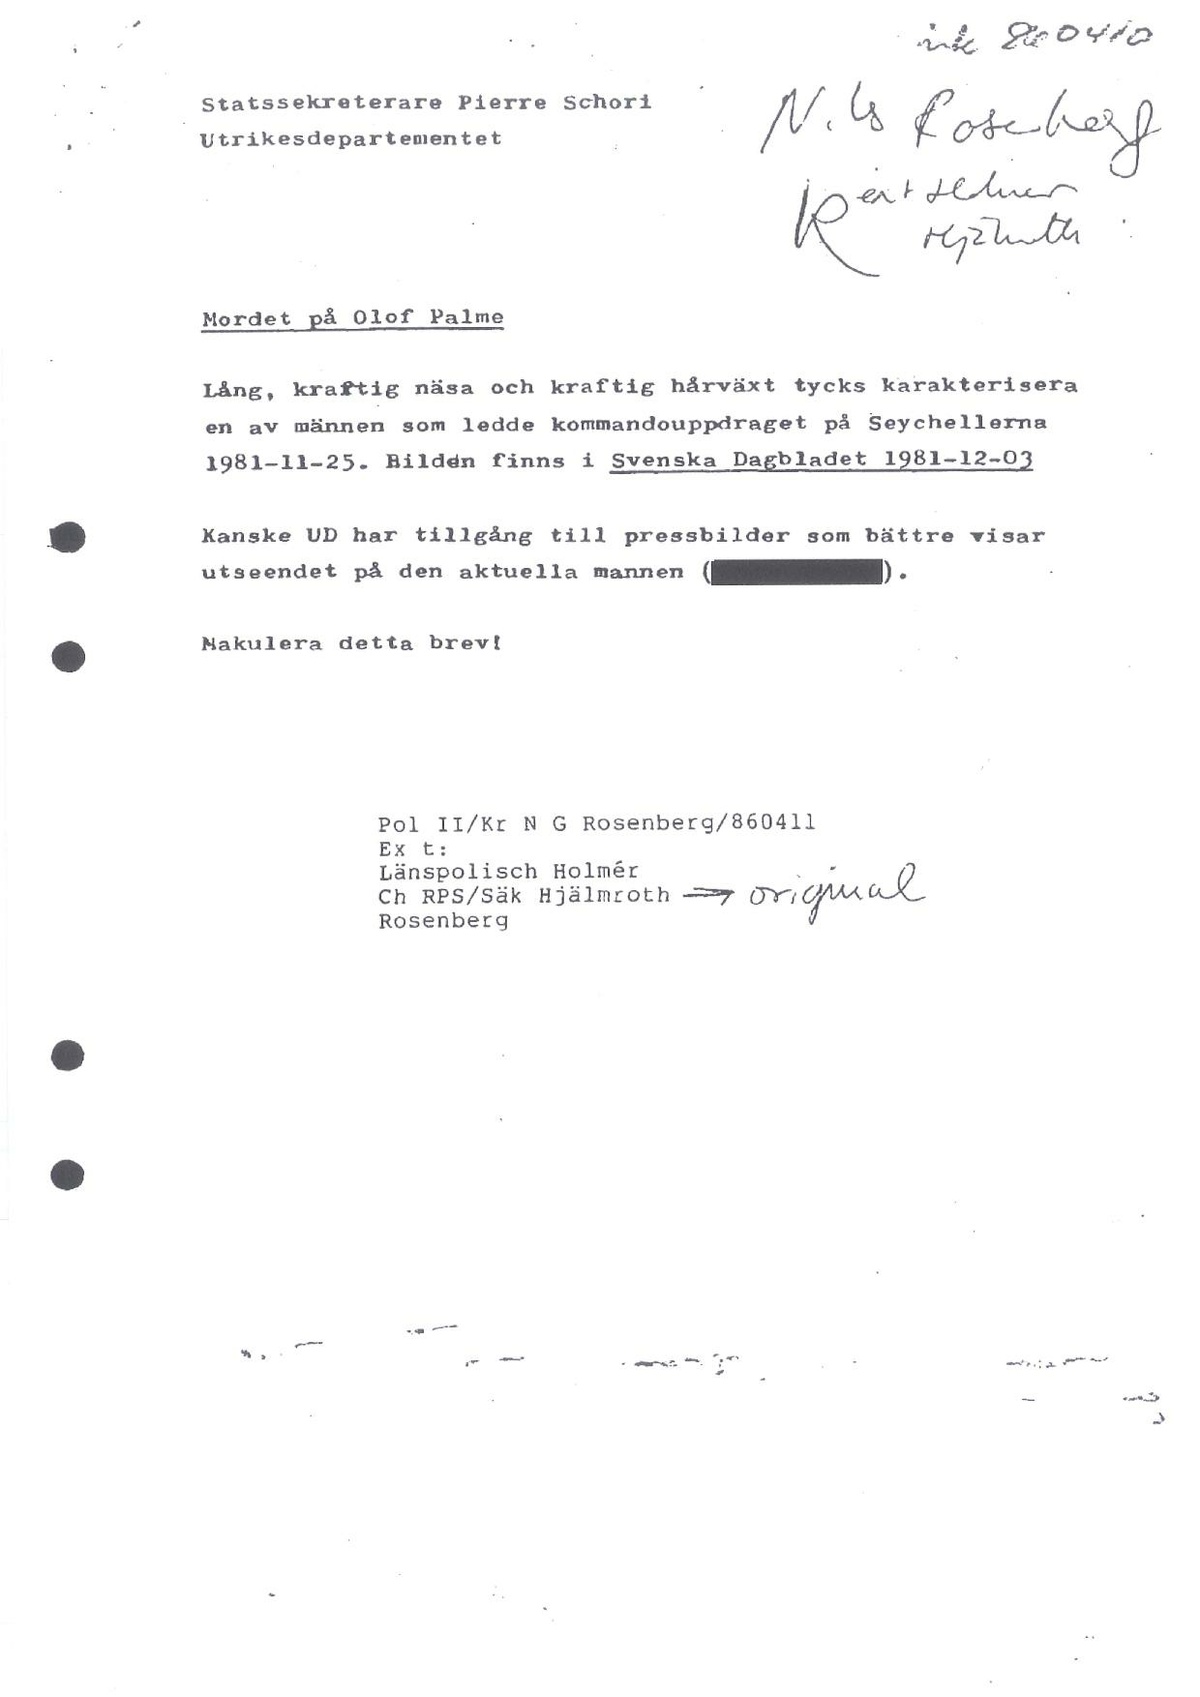 Pol-1986-04-16 HB2987-00 Statskupp-Seychellerna.pdf